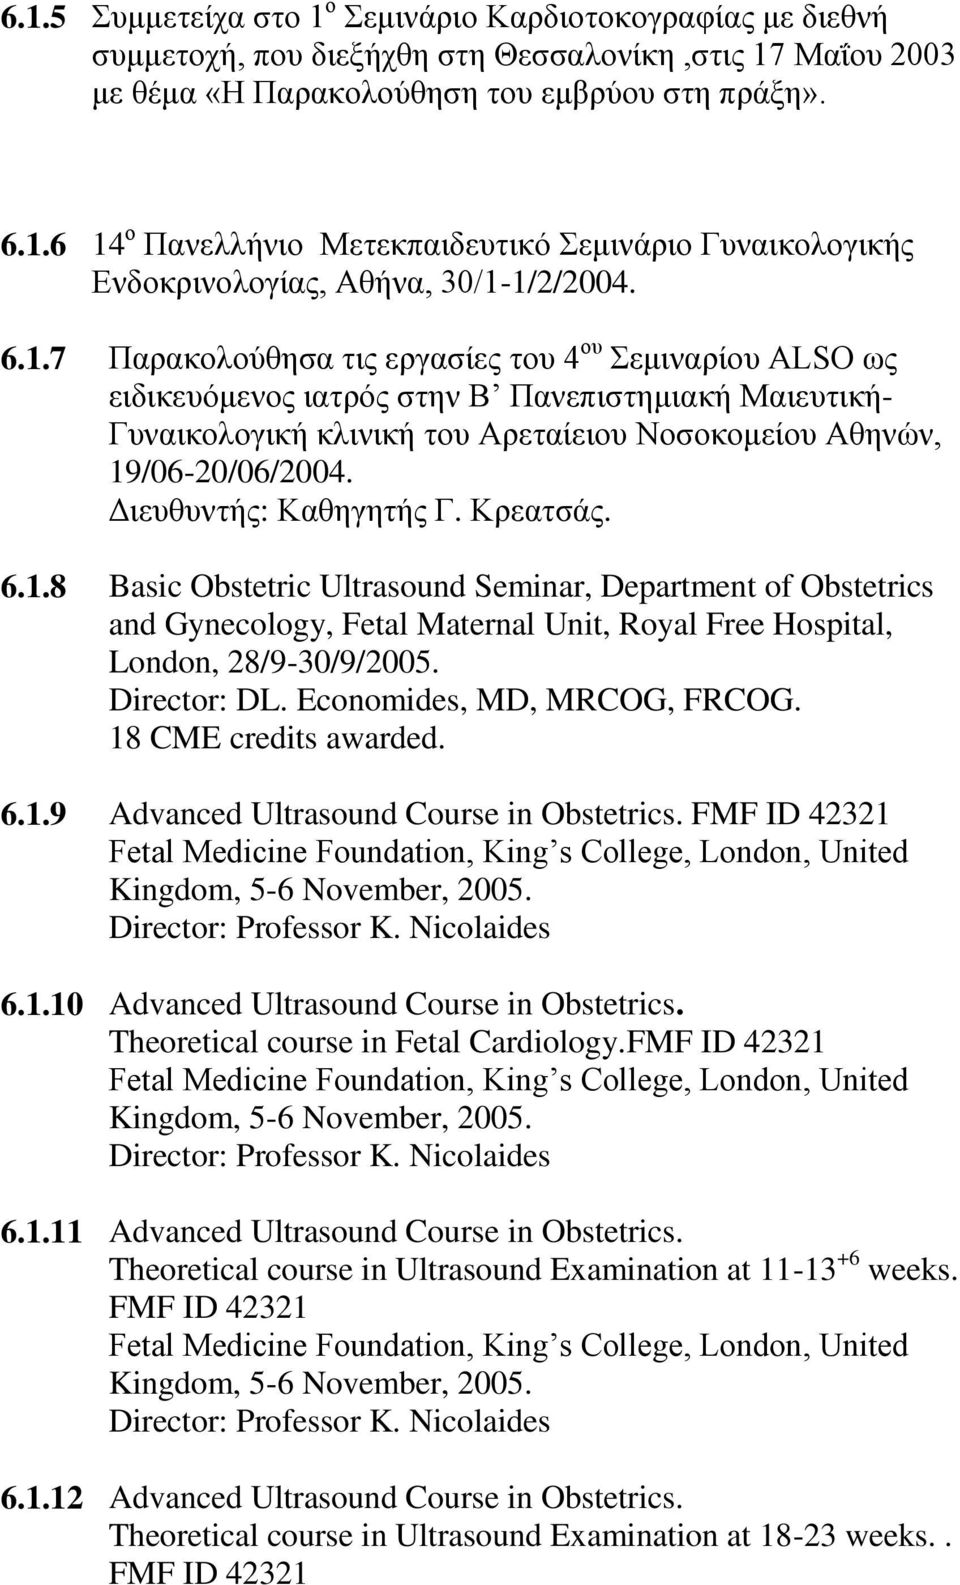 Γιεςθςνηήρ: Καθηγηηήρ Γ. Κπεαηζάρ. Basic Obstetric Ultrasound Seminar, Department of Obstetrics and Gynecology, Fetal Maternal Unit, Royal Free Hospital, London, 28/9-30/9/2005. Director: DL.